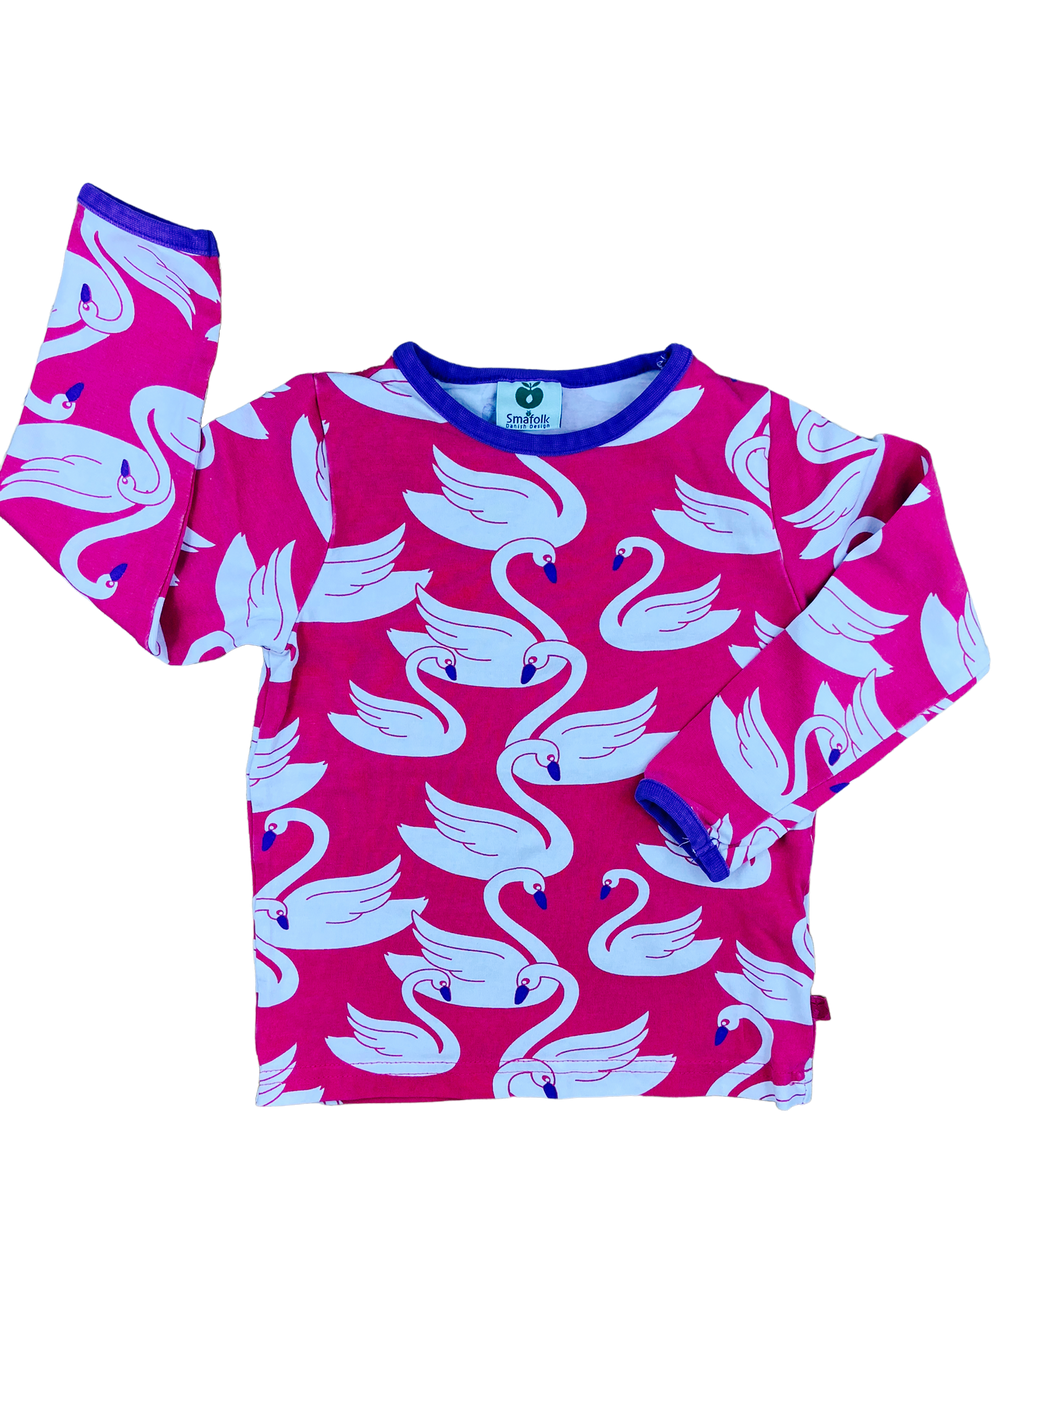 Smafolk Shirt Second HAnd Kinder Kleidung Schwan